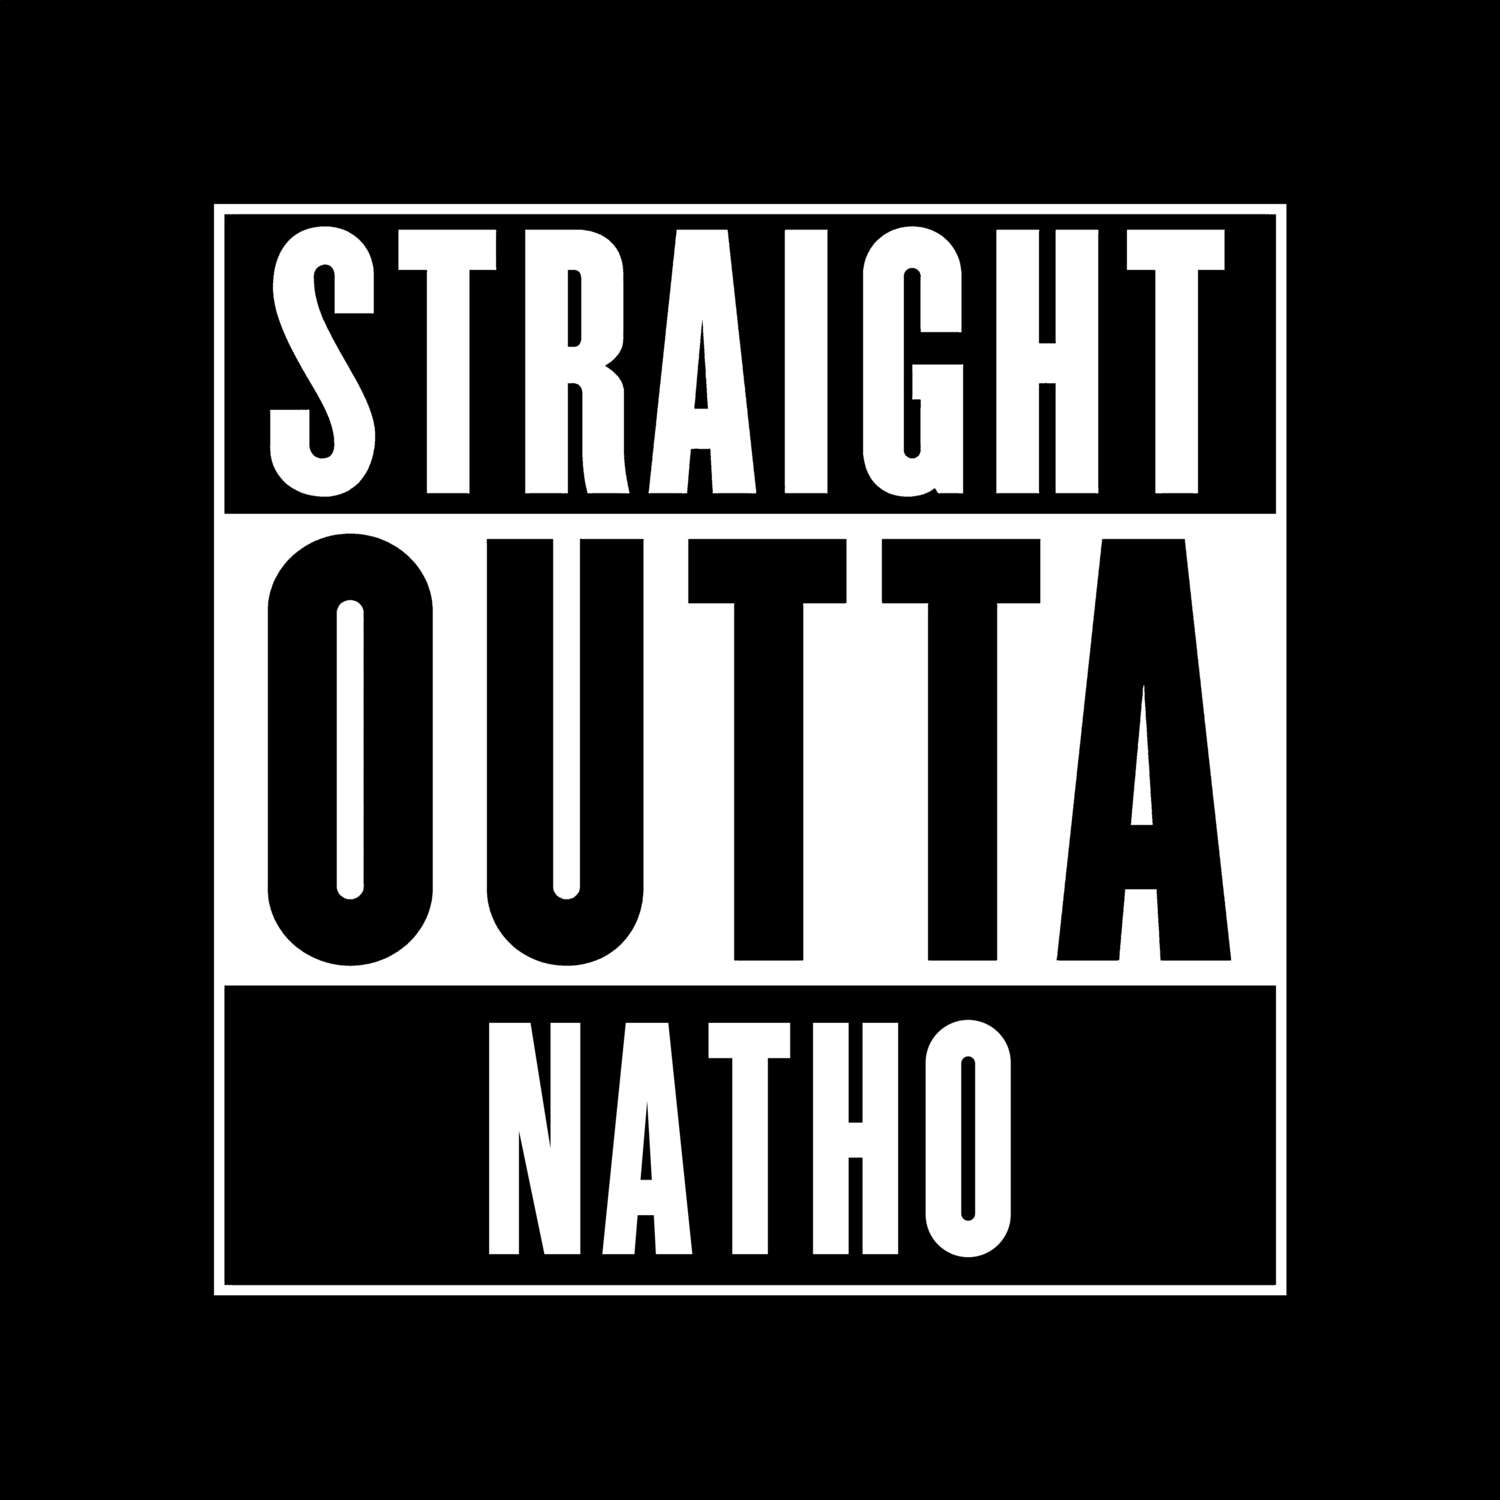 Natho T-Shirt »Straight Outta«